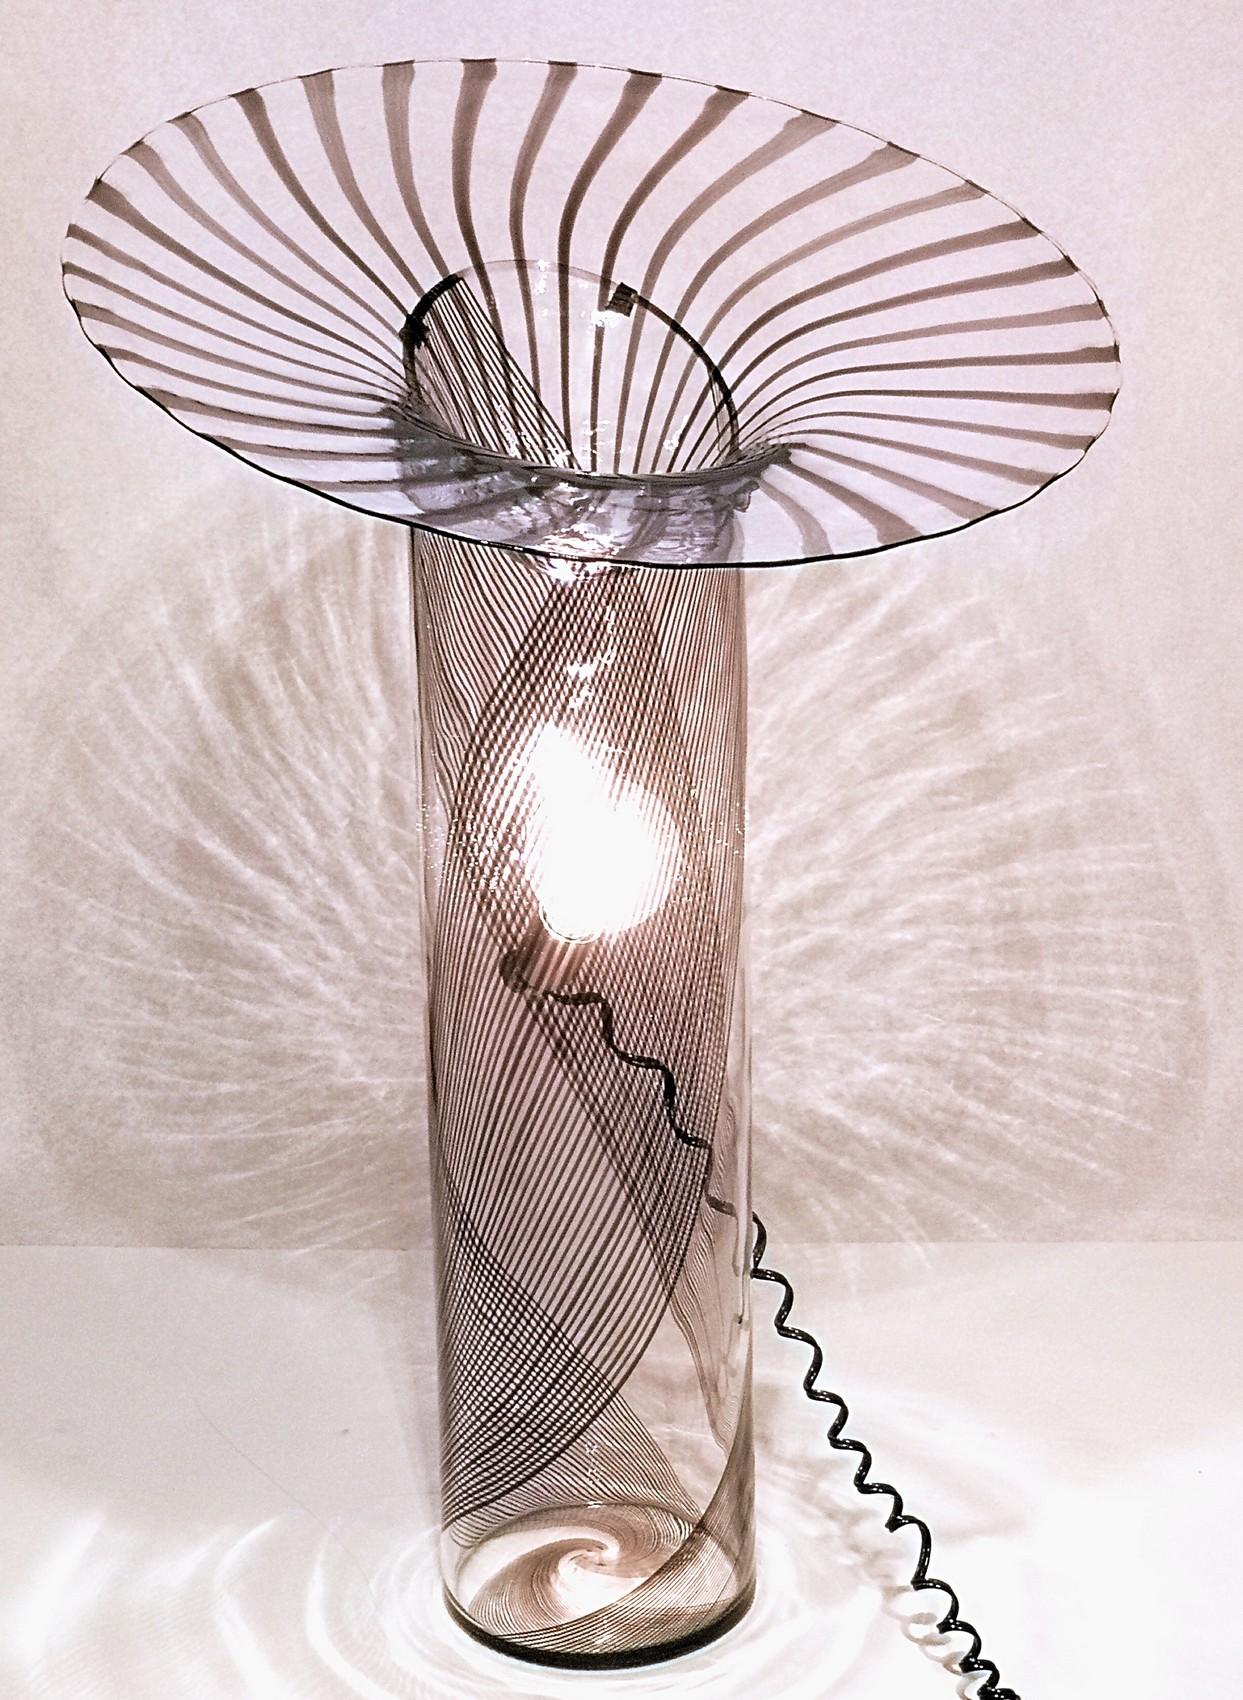 Mid-Century Modern Lino Tagliapietra, 1972, Amethyst Filigree Ghibli Floor Lamp, the Artist Sunrise